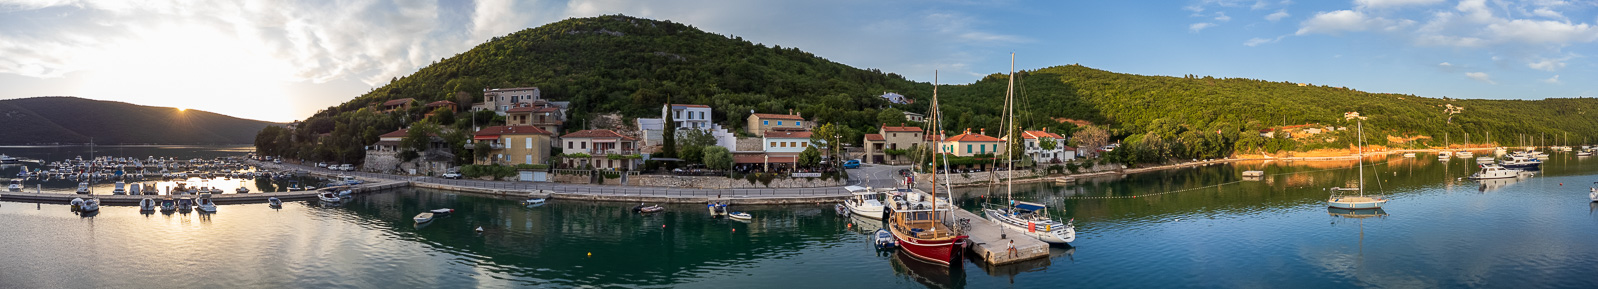 Baai van Trget, Istrië, Kroatië 